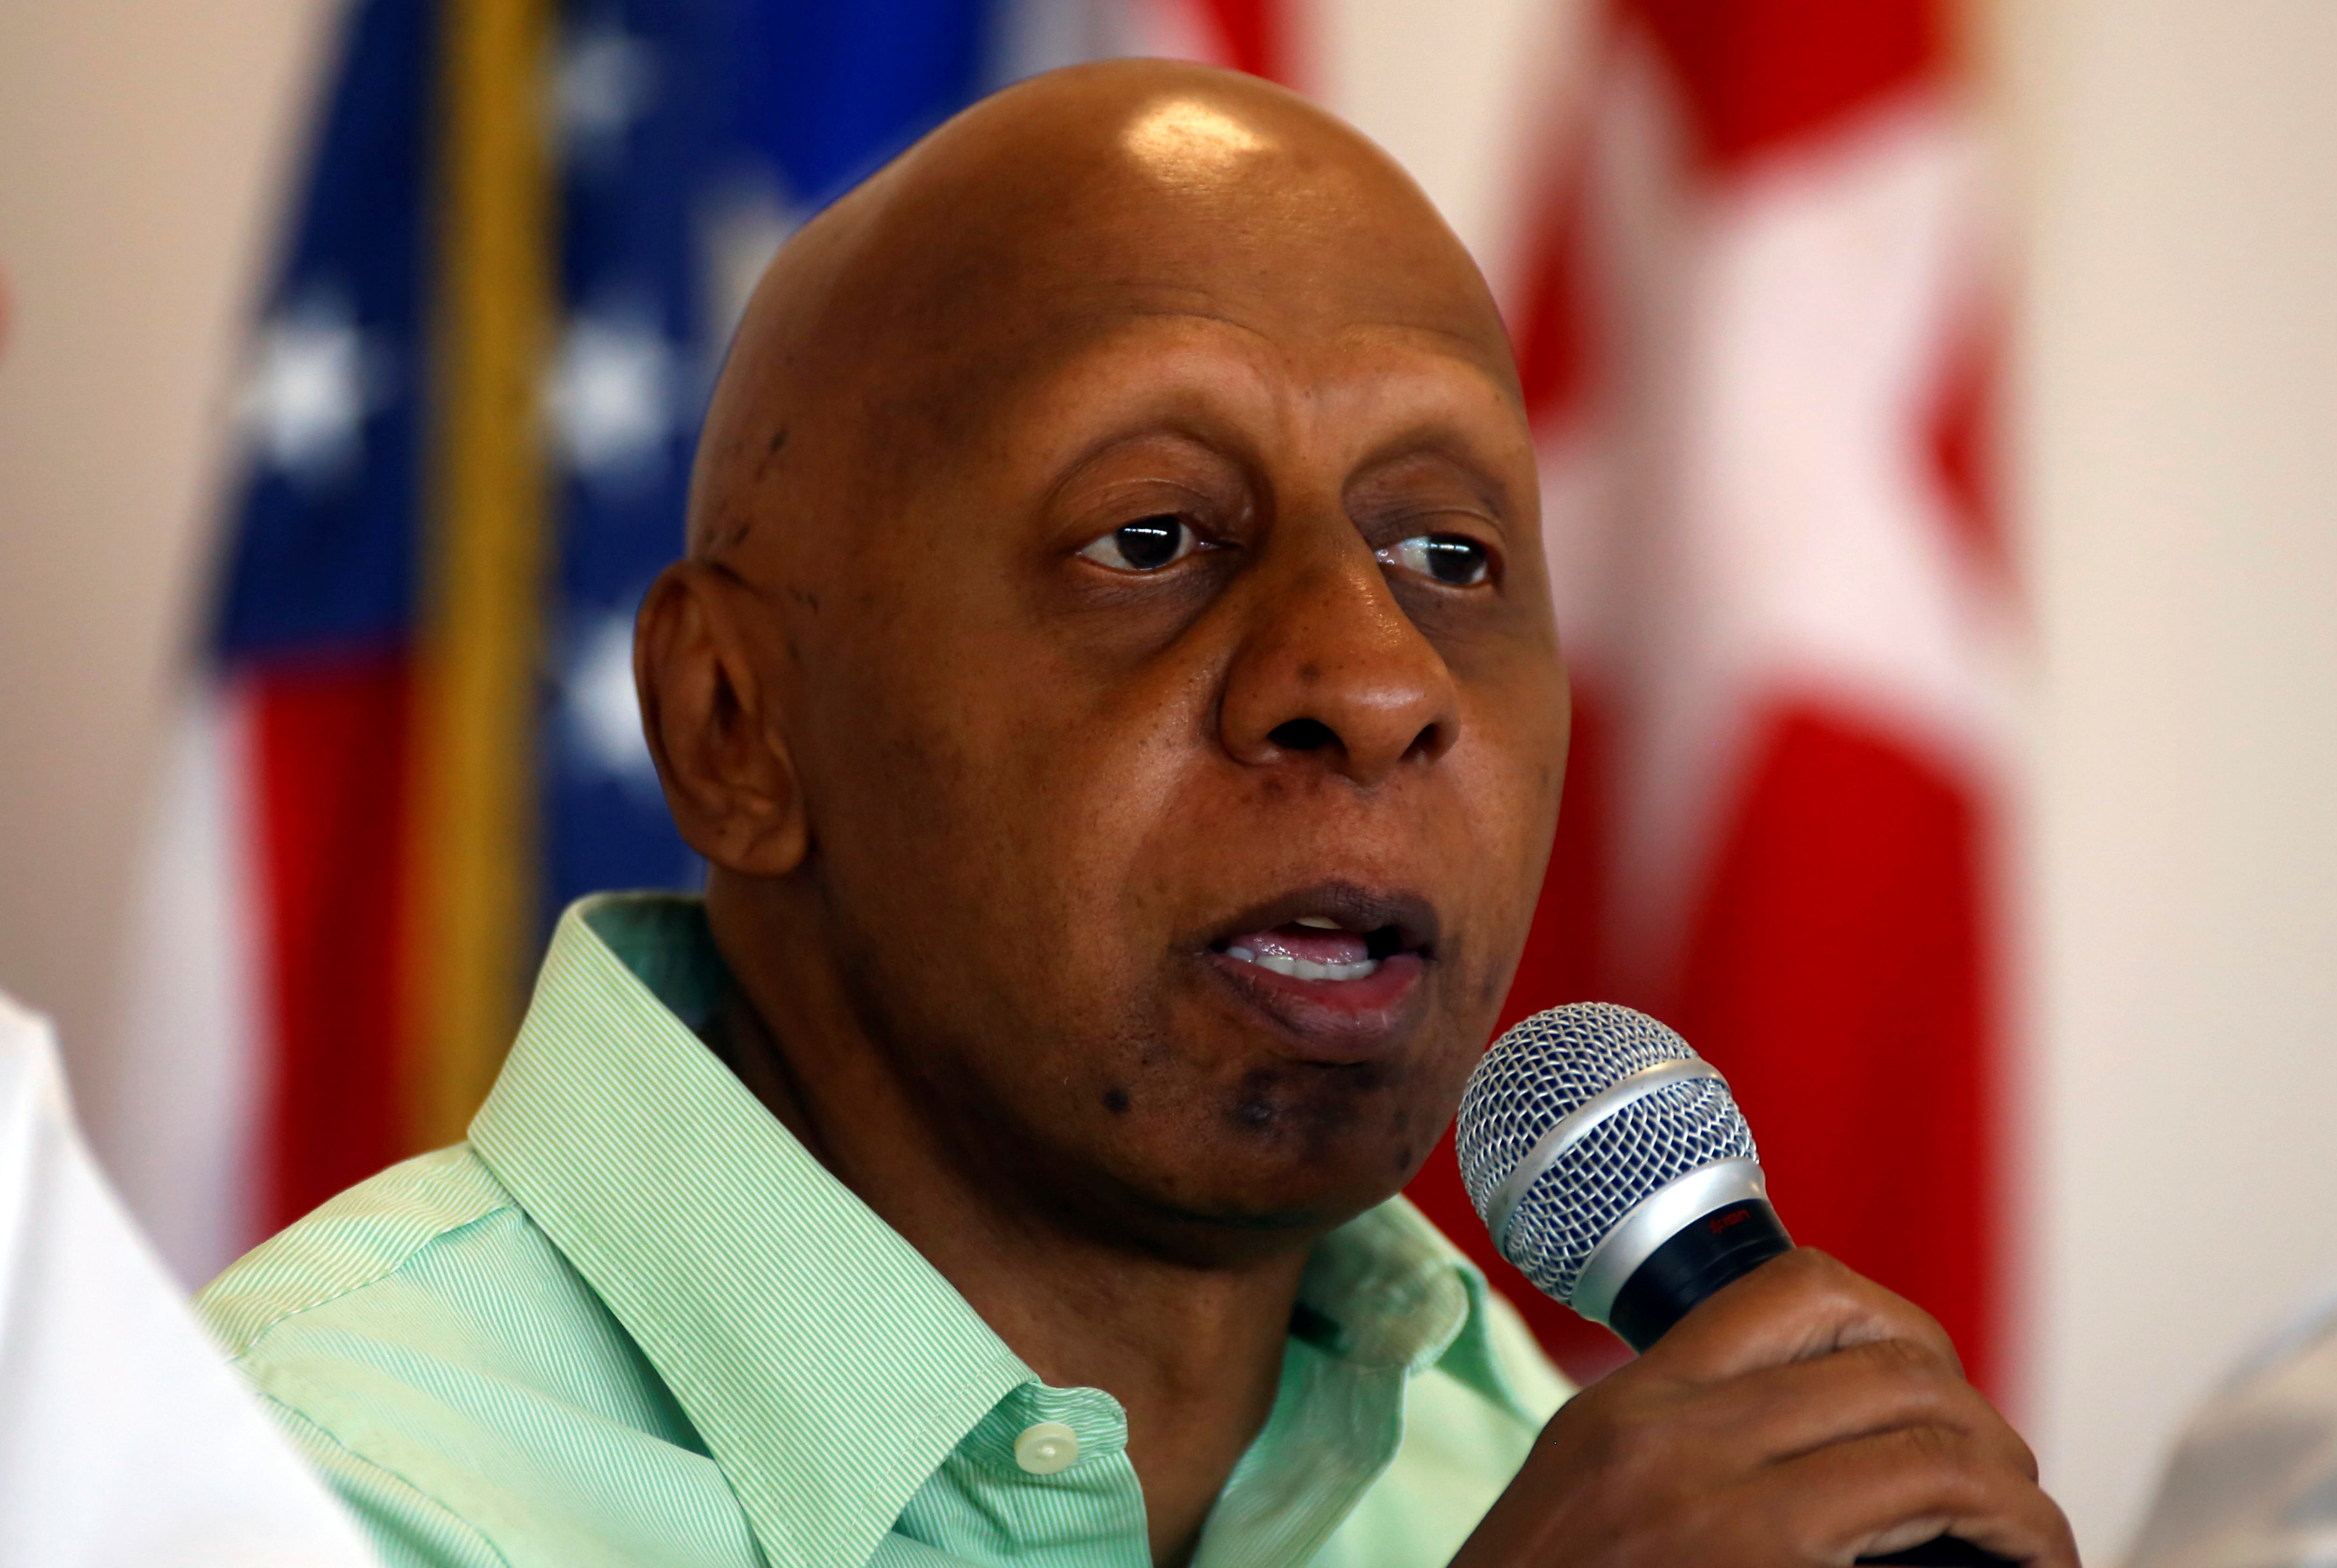 El disidente cubano Guillermo Fariñas fue retenido por las fuerzas de seguridad del régimen a su llegada al país tras la gira por Europa y EEUU (EFE/THAIS LLORCA)